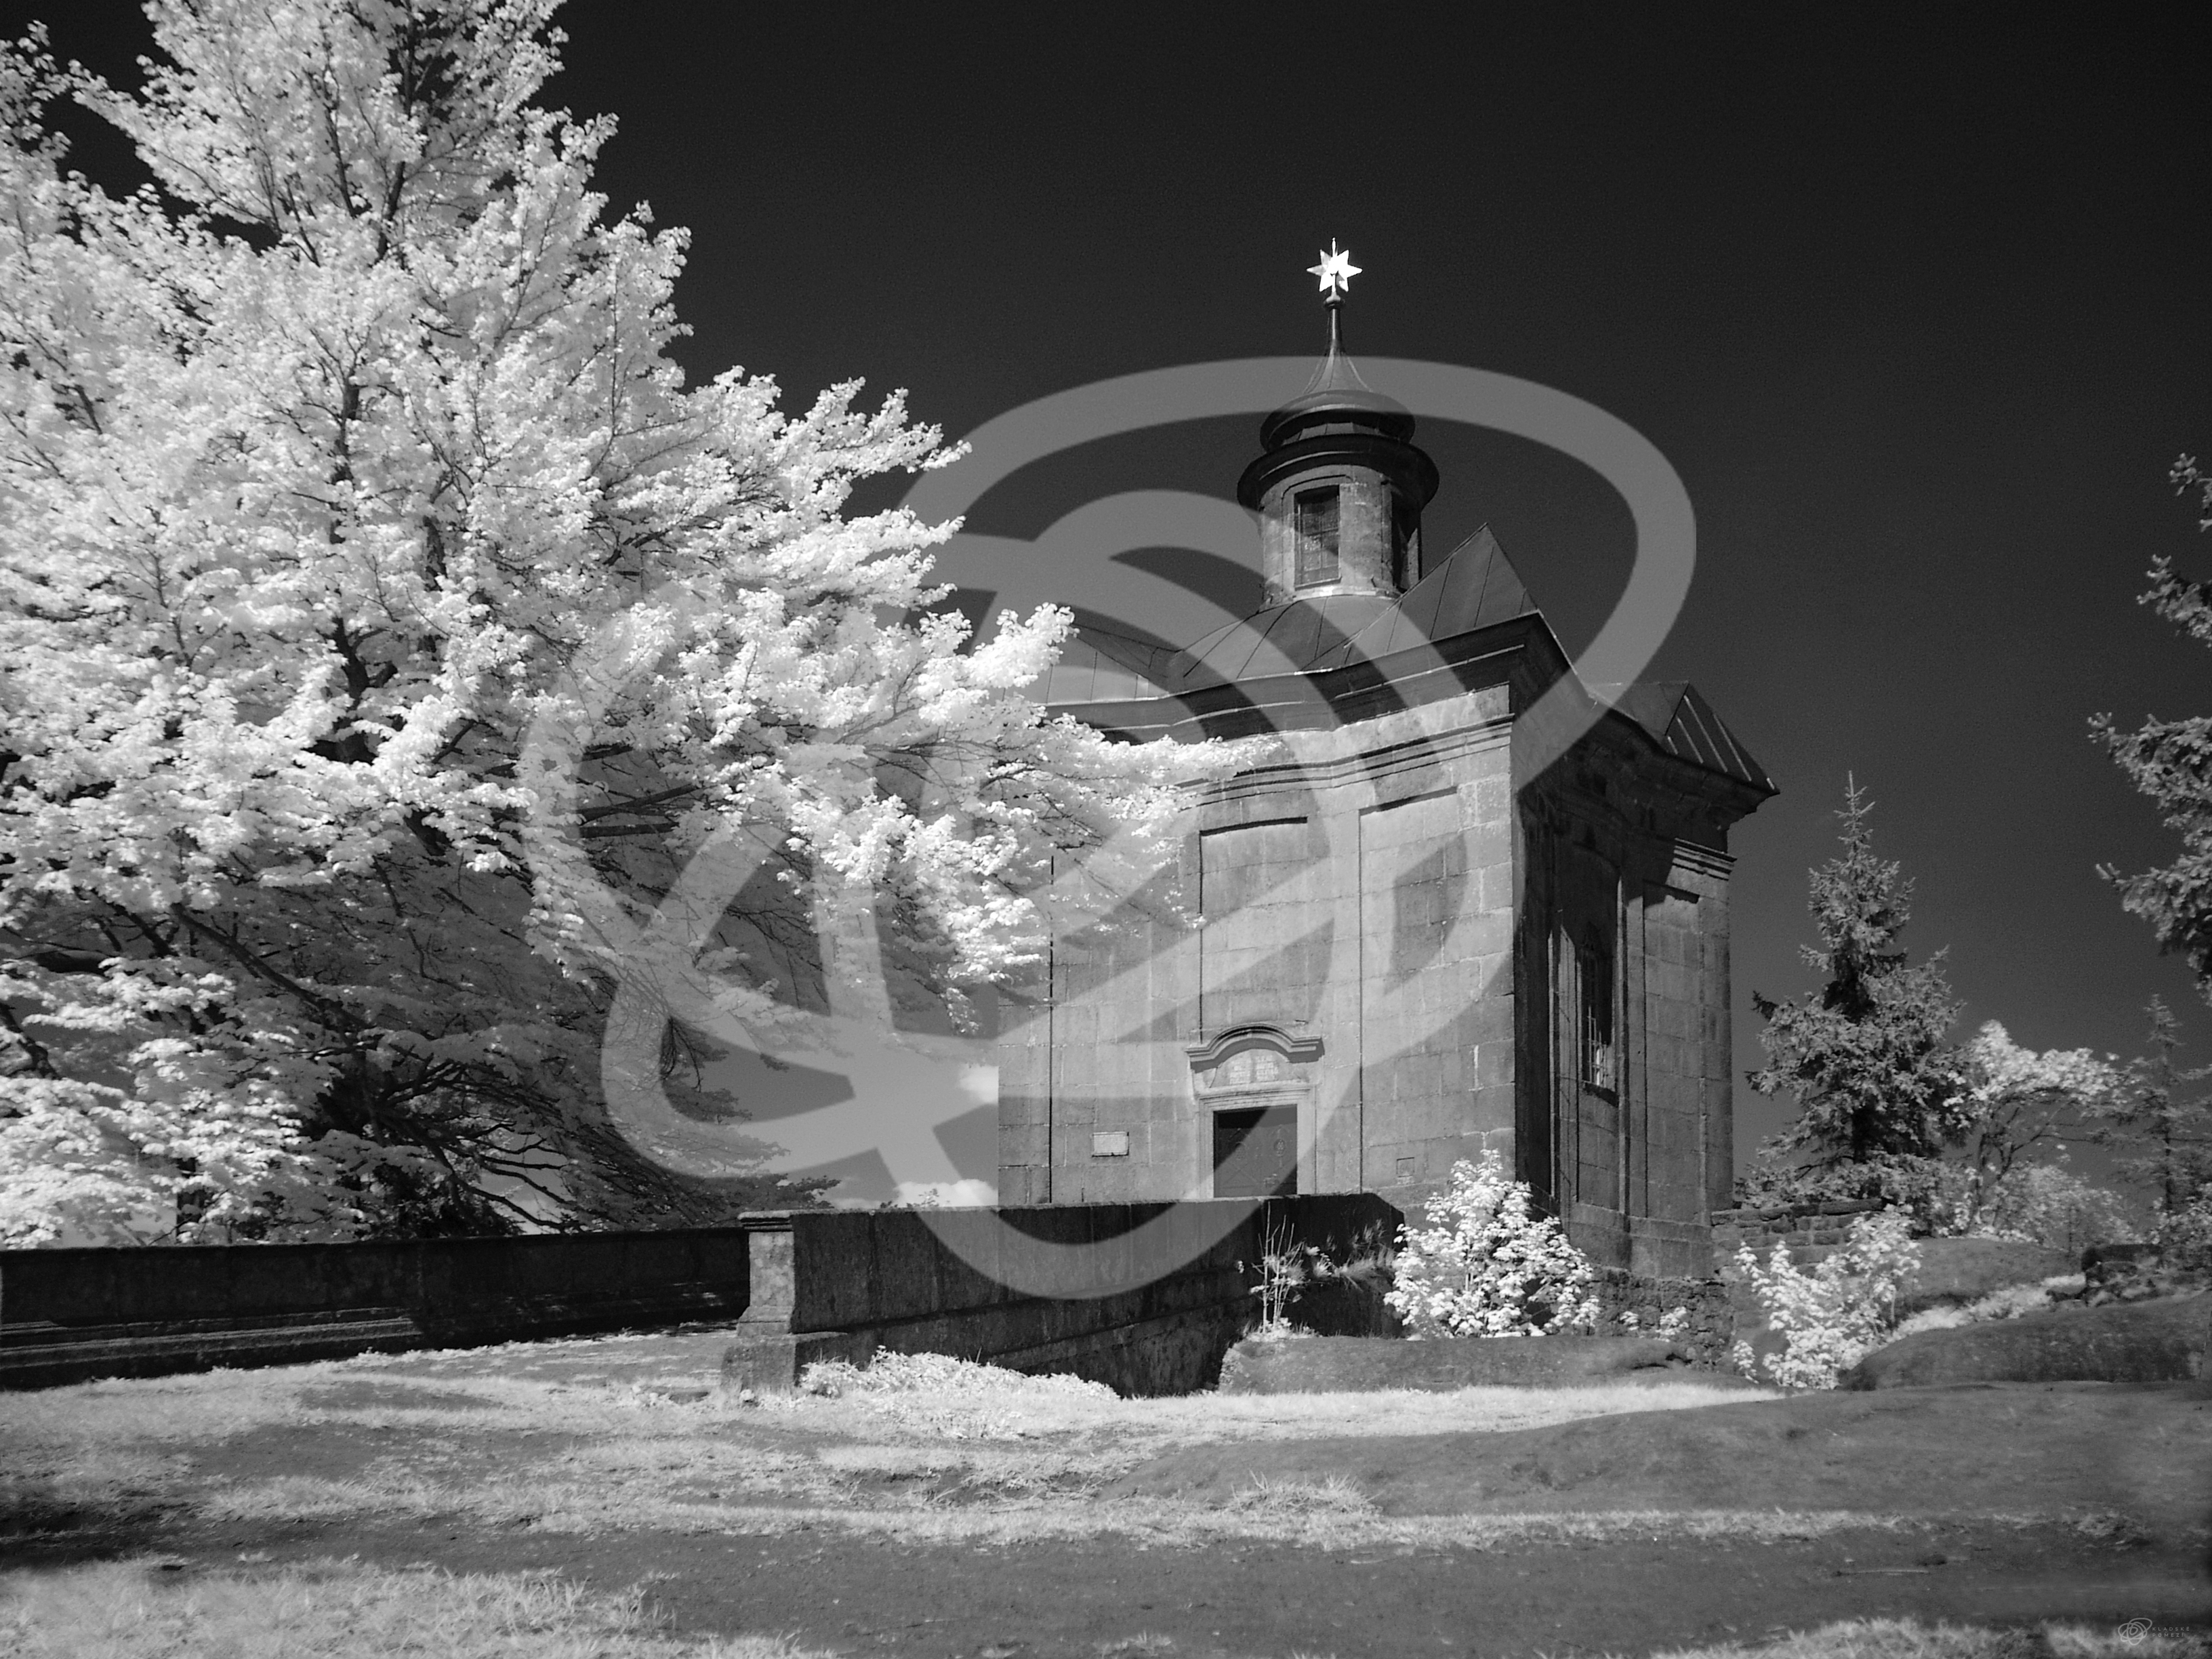 Kaple Panny Marie Sněžné na Hvězdě